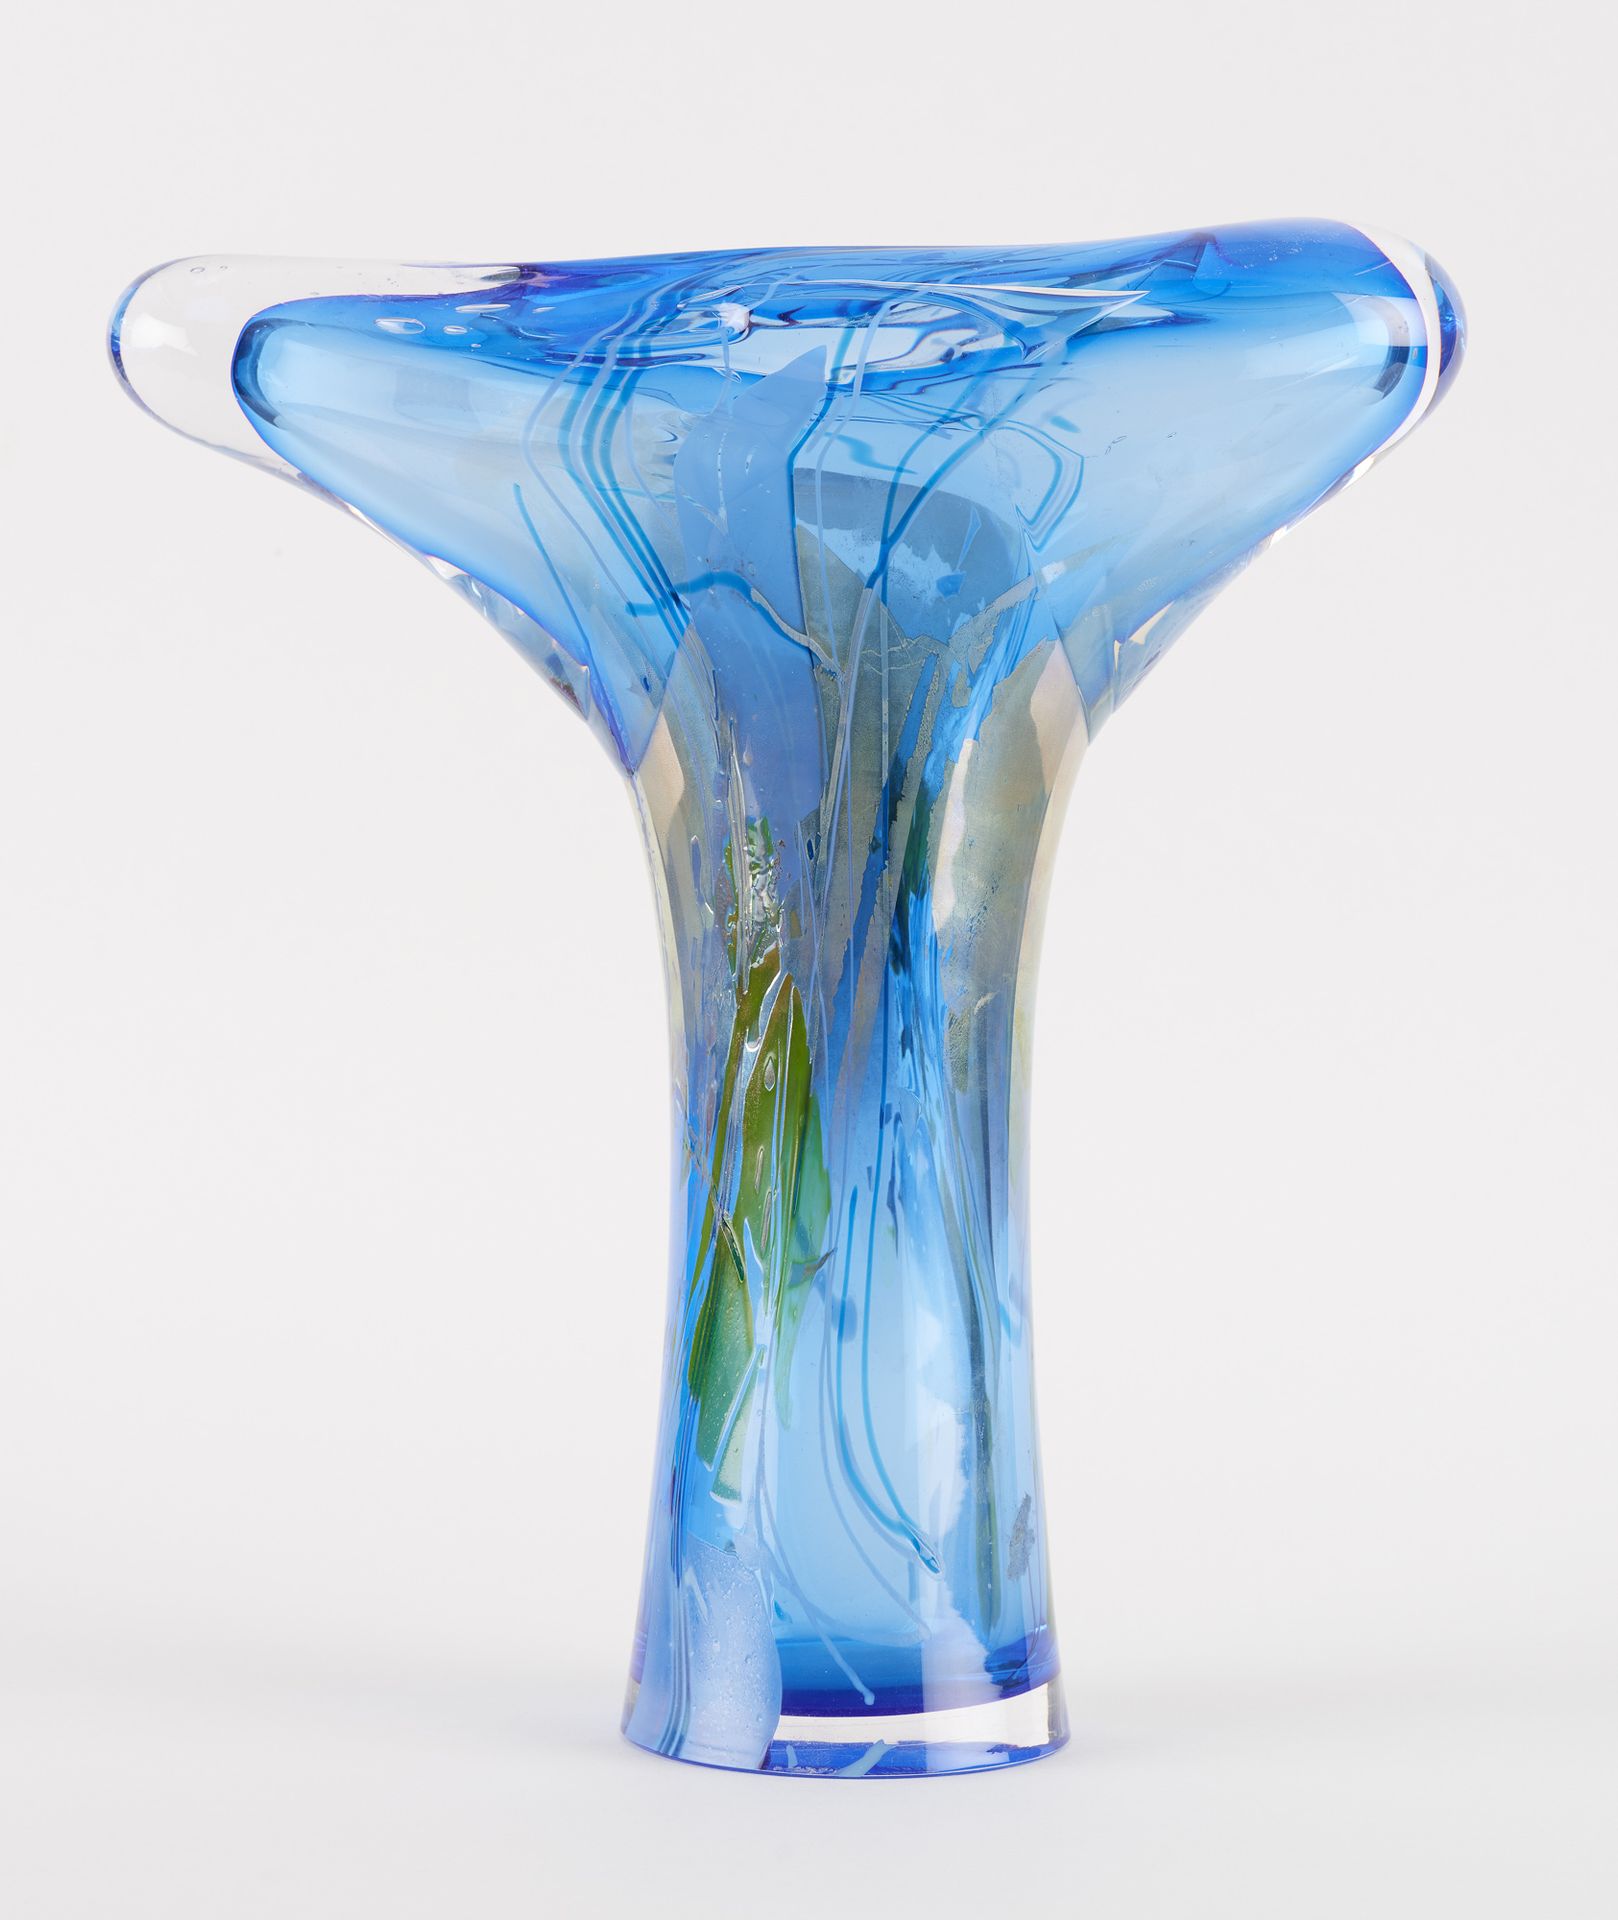 Samuel Herman, Val Saint Lambert. Cristalería: Jarrón de cristal con fondo azul.&hellip;